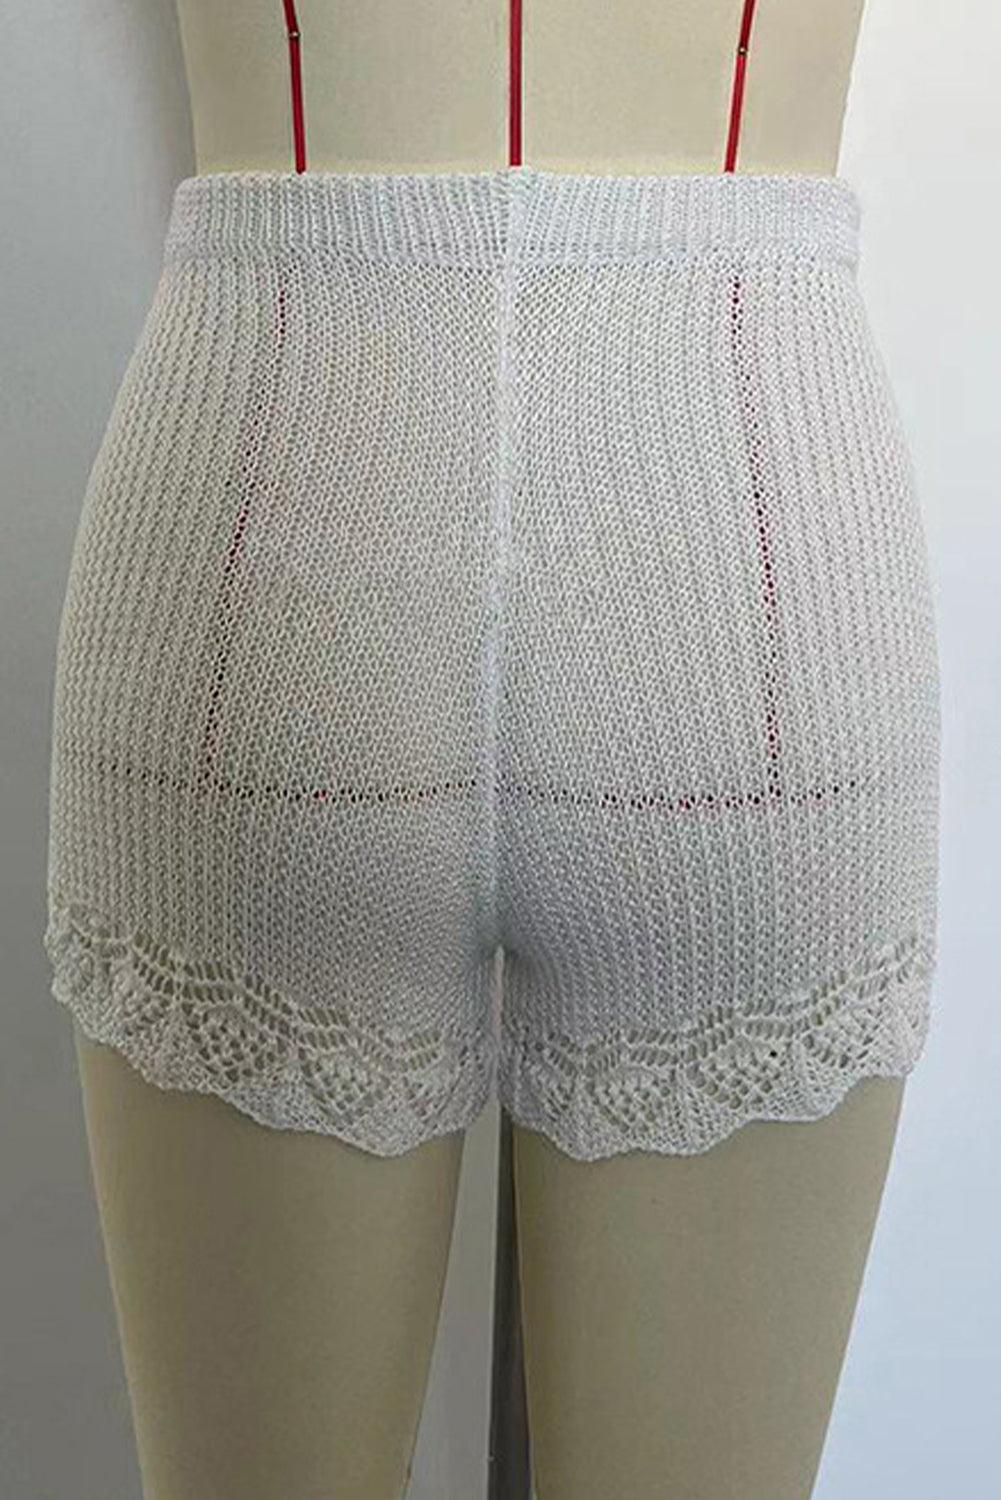 White Crochet Trim Knitted Beach Shorts - L & M Kee, LLC